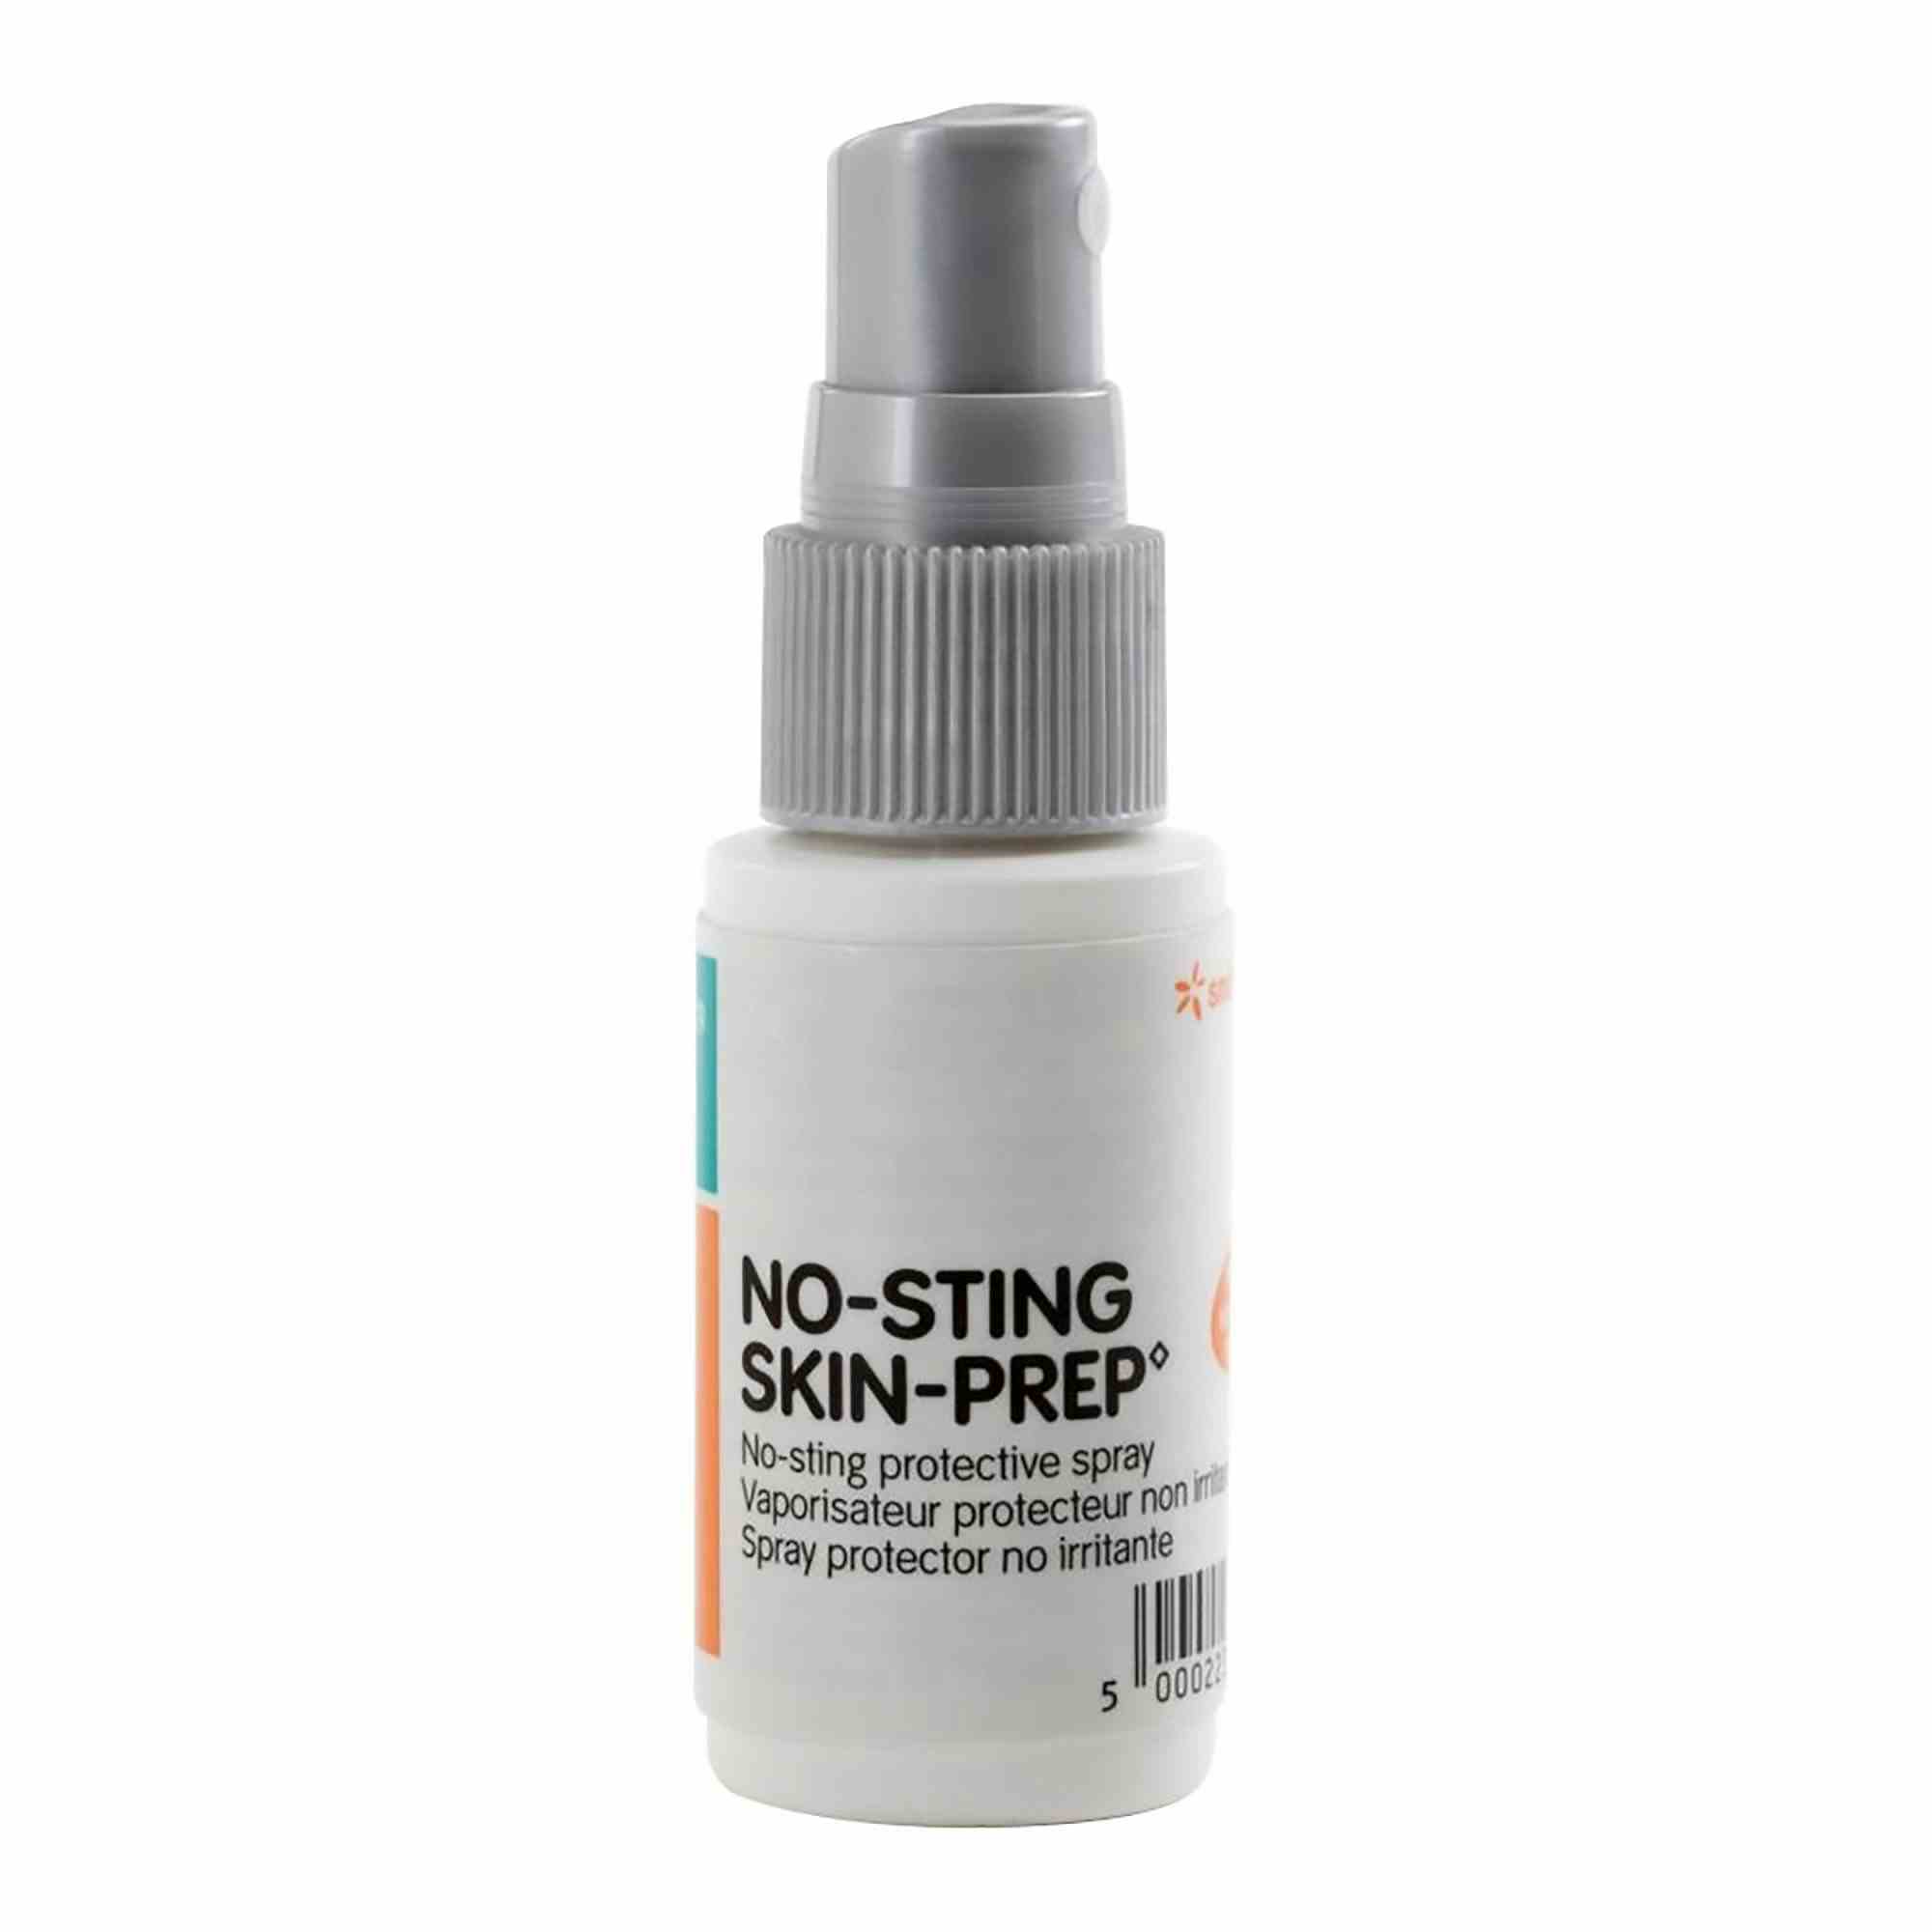 Smith & Nephew No-Sting Skin-Prep Protective Spray, 1 oz., 66800709, 1 Each